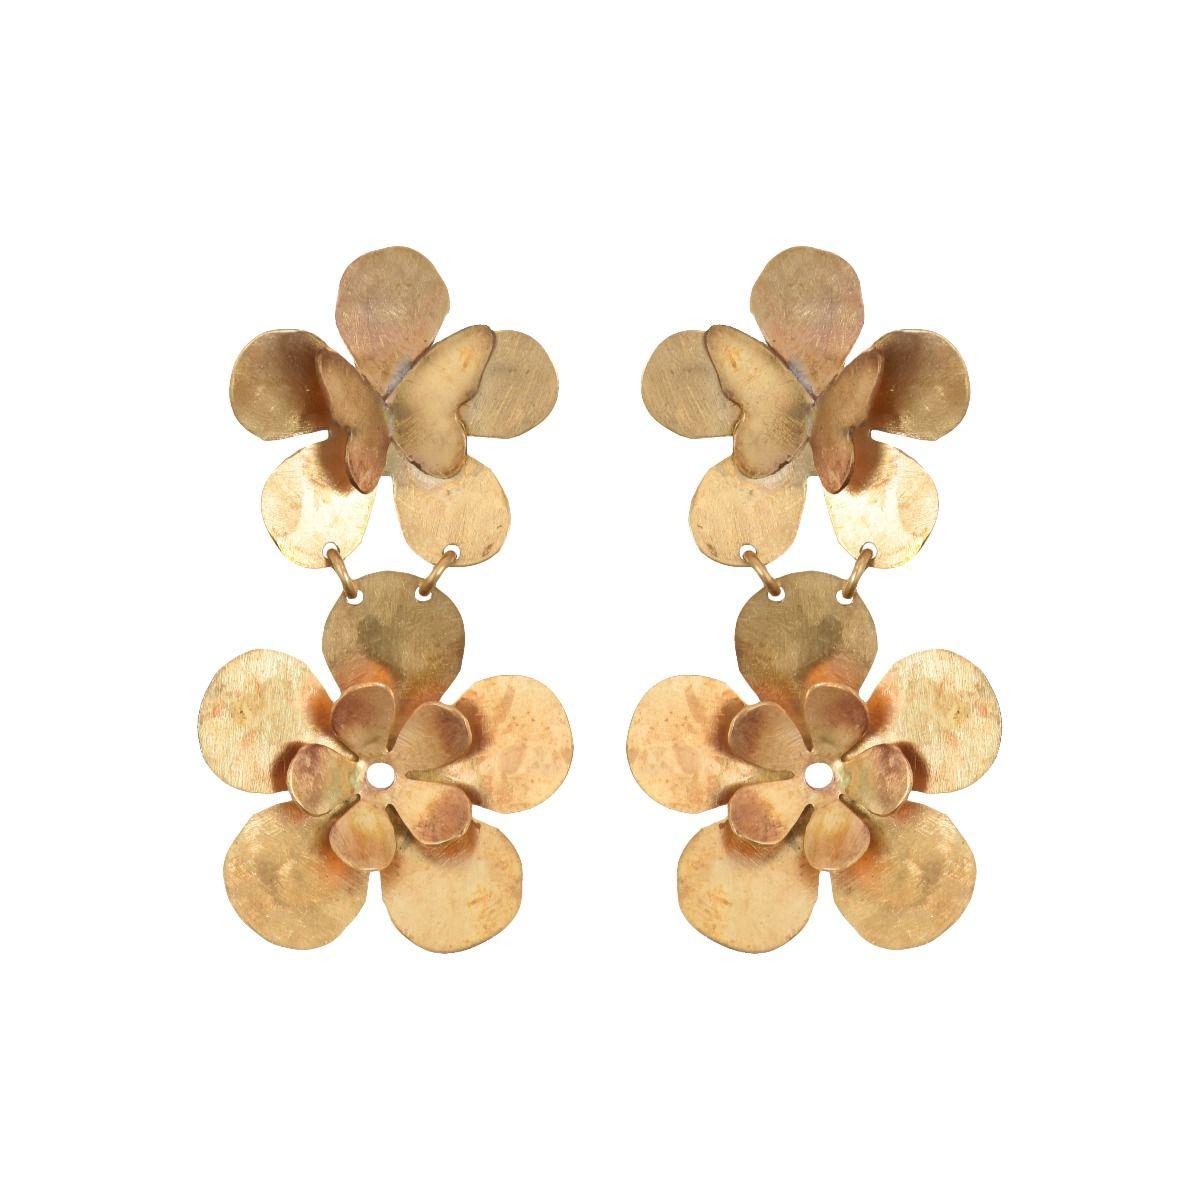 We Dream in Colour jewellery | petite butterfly garden earrings